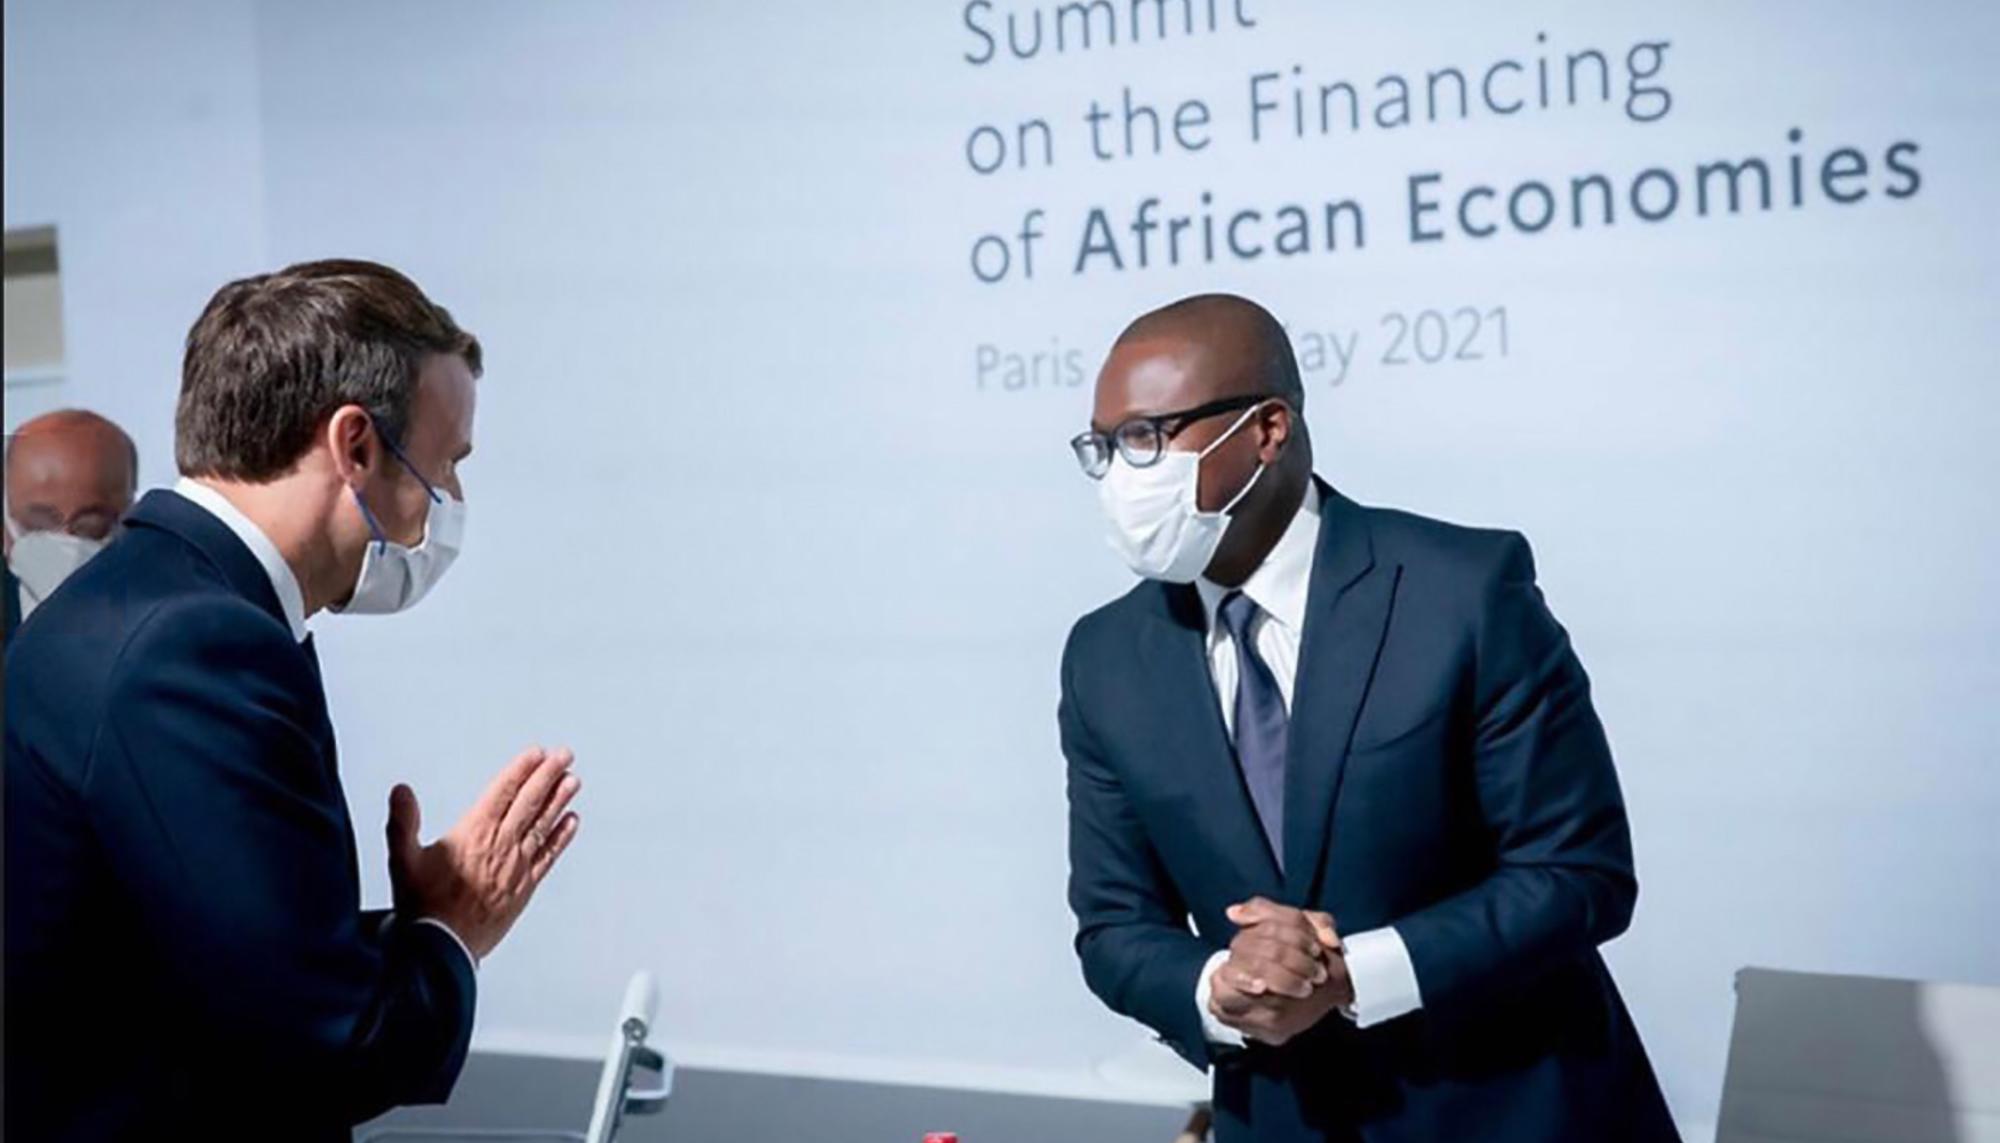 Cumbre sobre la financiación de las economías africanas en París